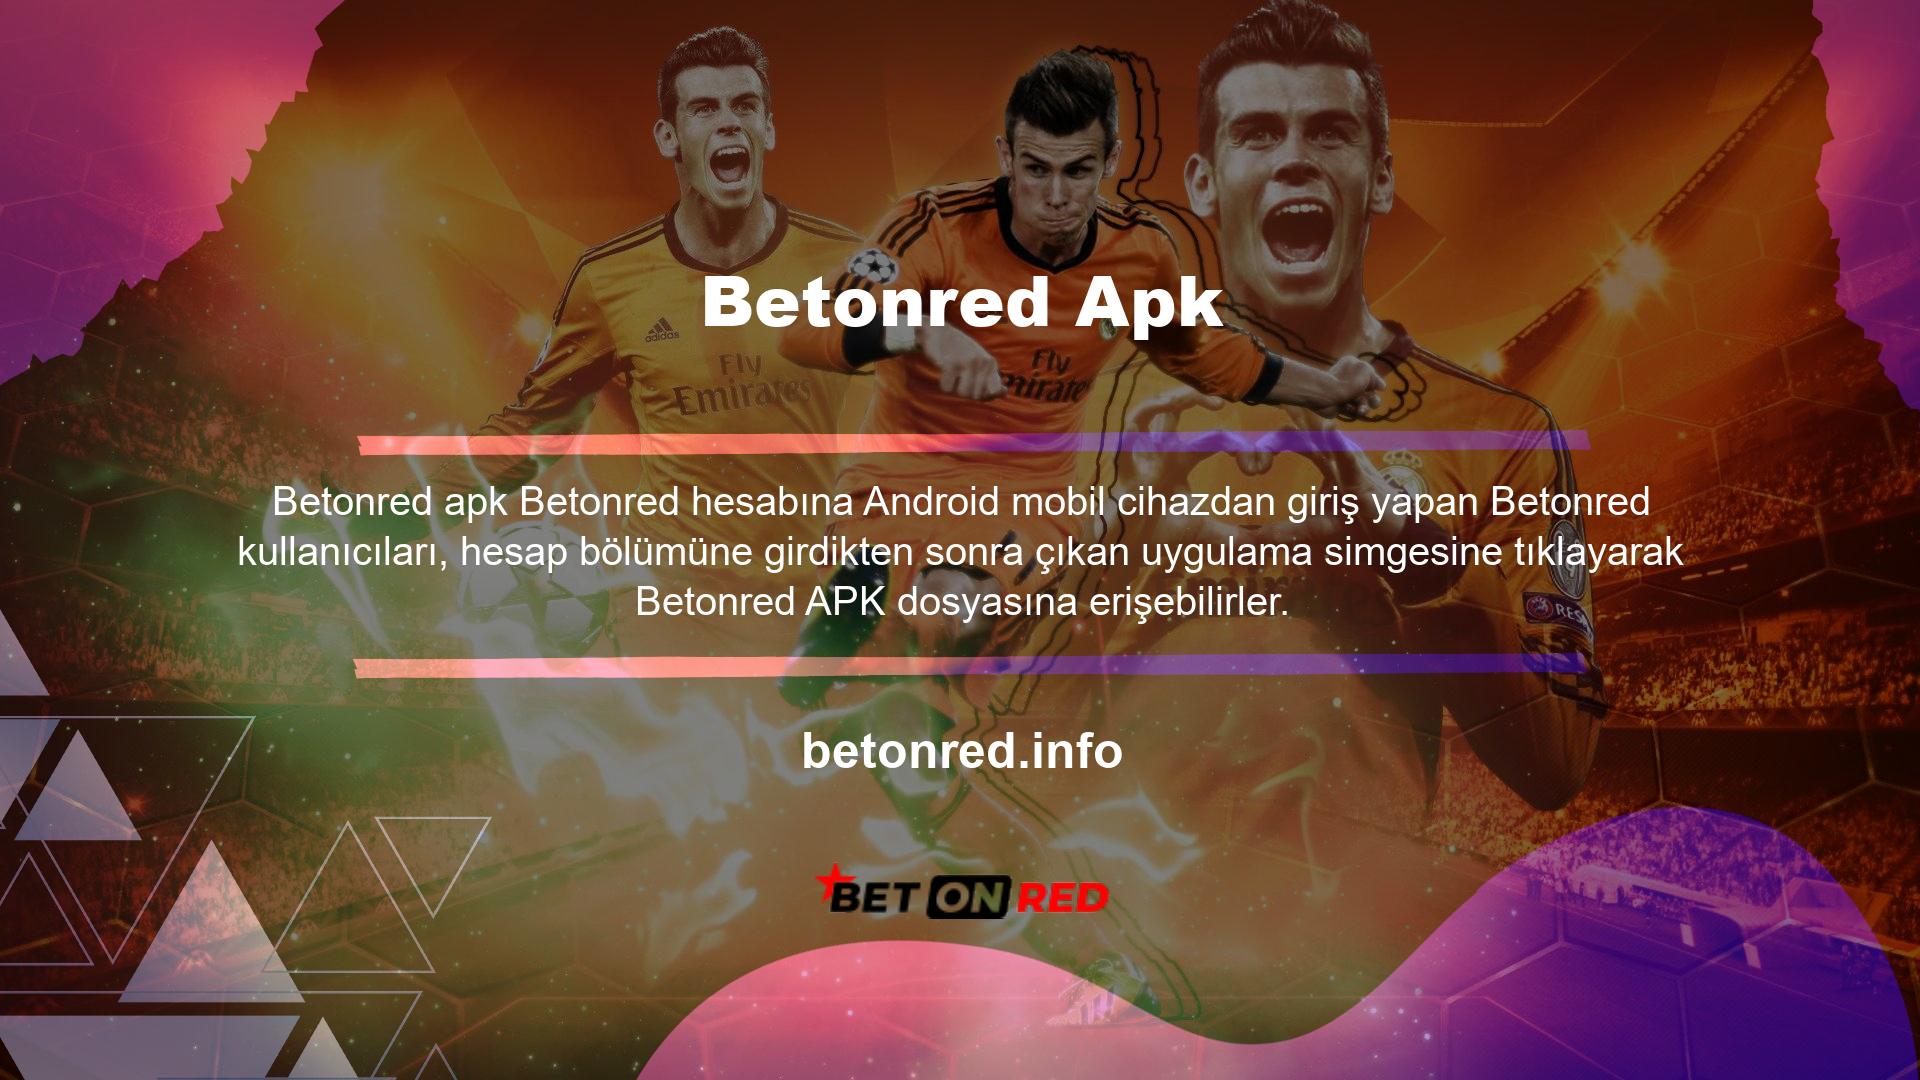 Betonred Apk dosyasını cihazlarına indirmiş olan kullanıcılar, bu dosyayı yükleyecek ve ardından resmi Betonred Android uygulamasını cihazlarına yükleyecektir